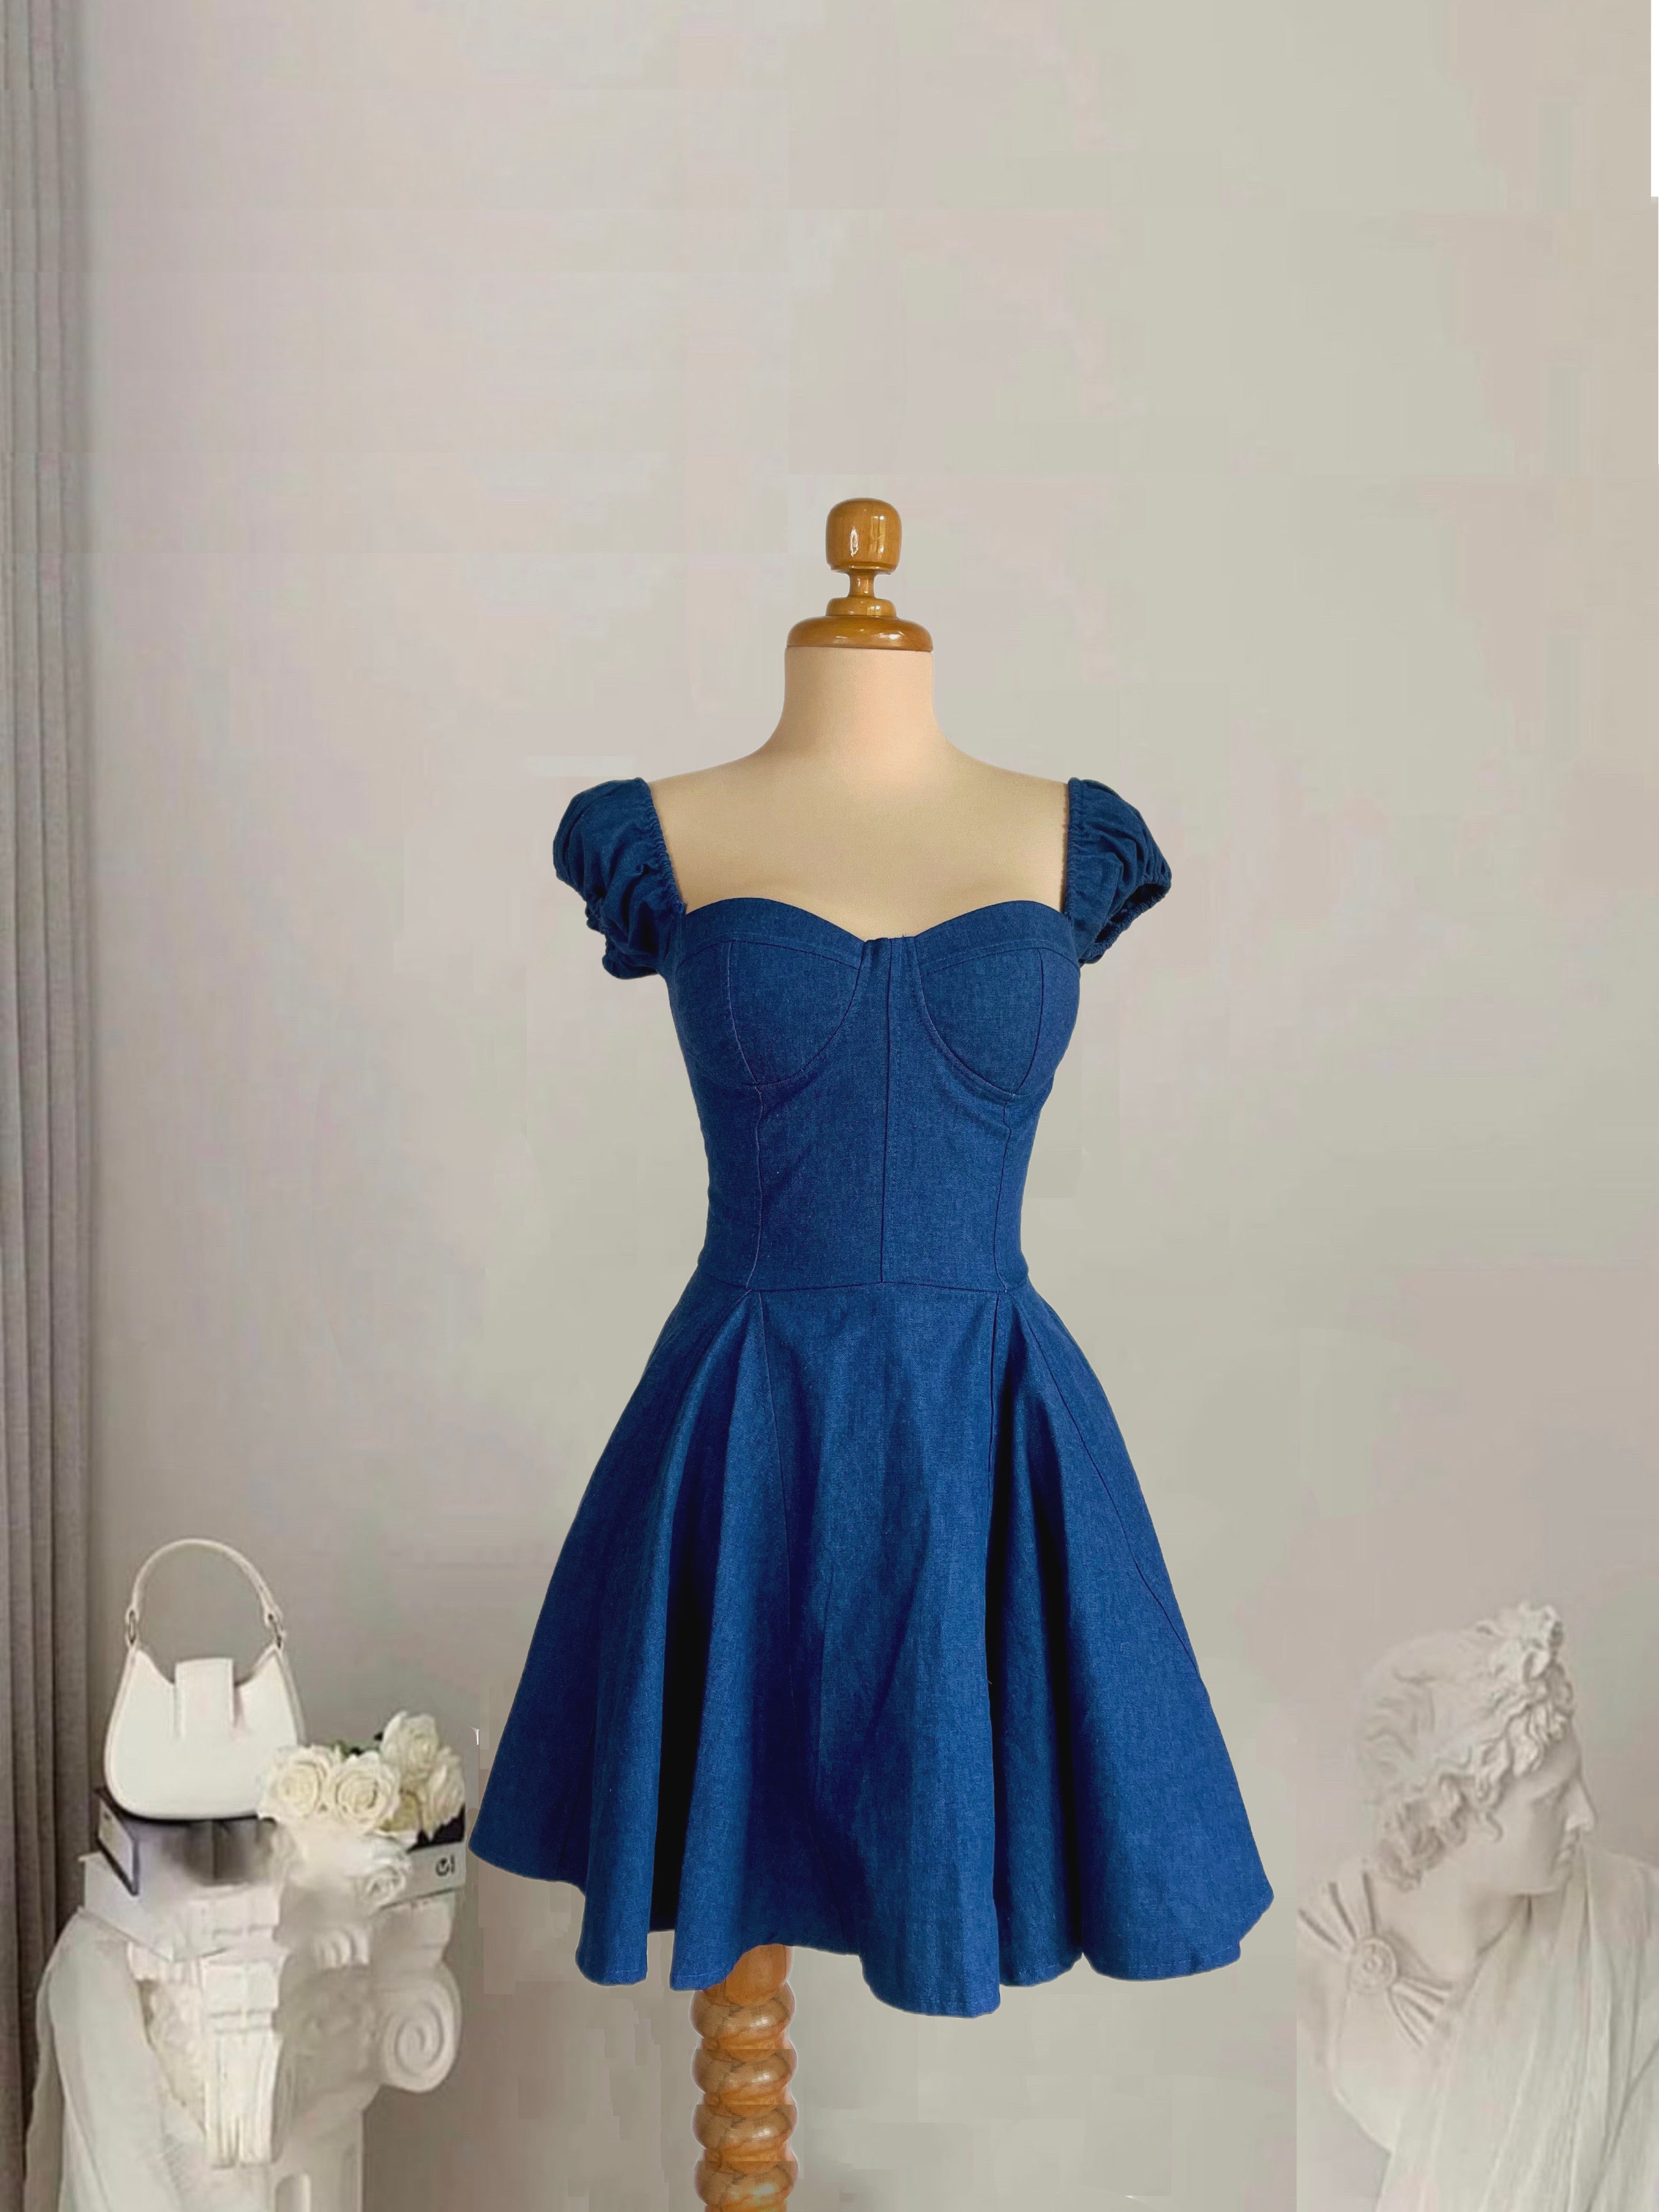 A Denim vestido sara azul